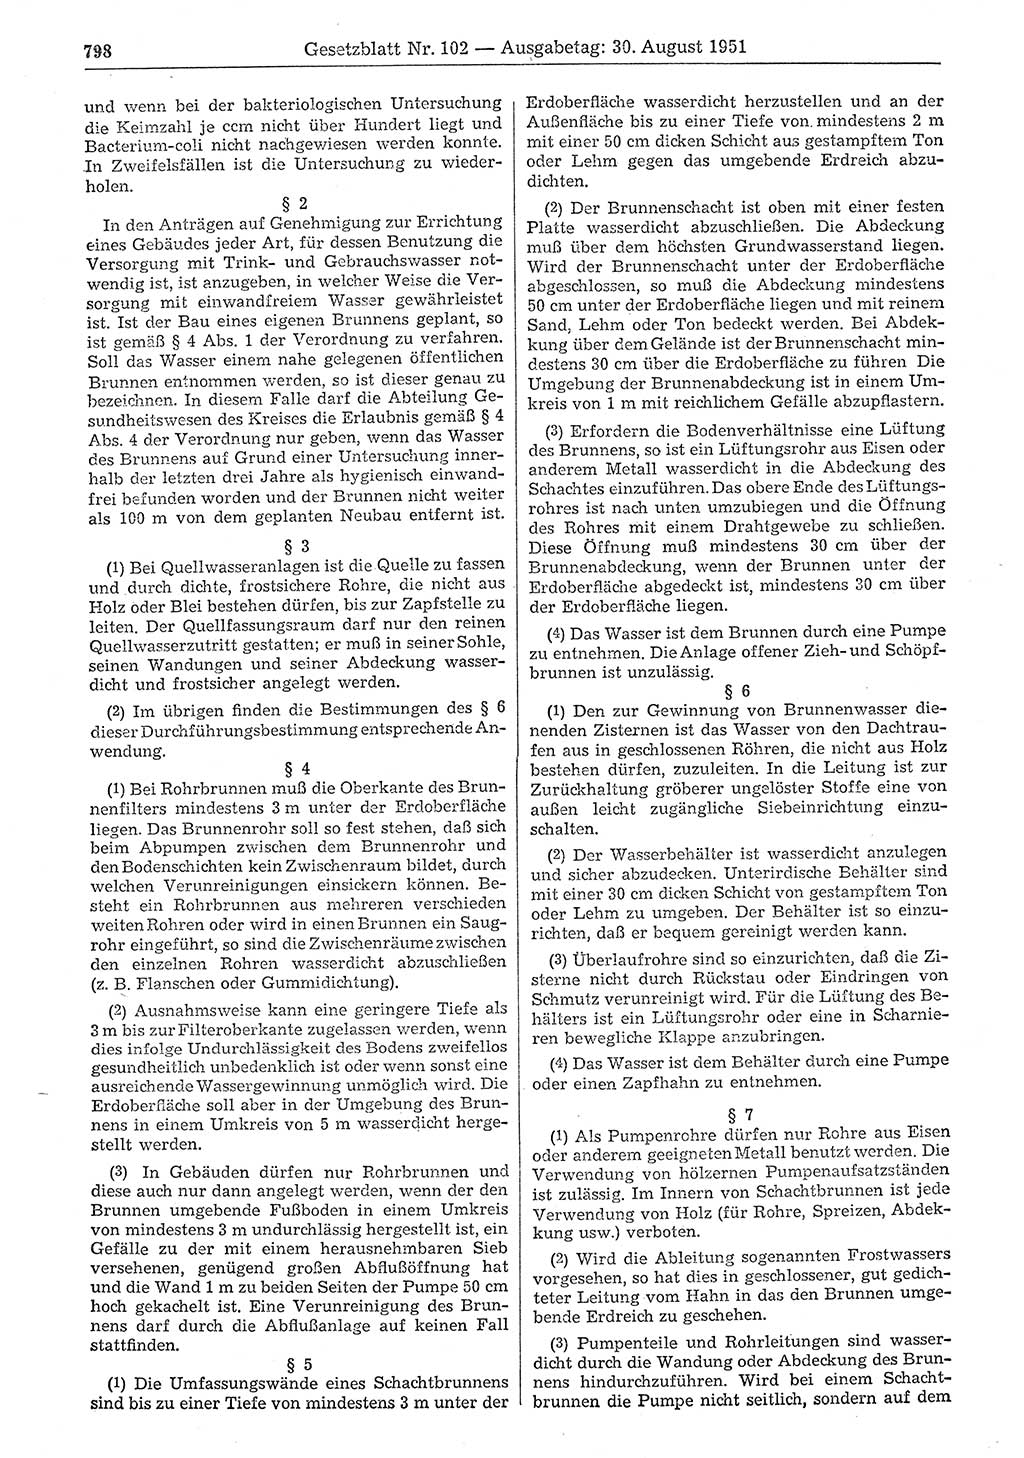 Gesetzblatt (GBl.) der Deutschen Demokratischen Republik (DDR) 1951, Seite 798 (GBl. DDR 1951, S. 798)